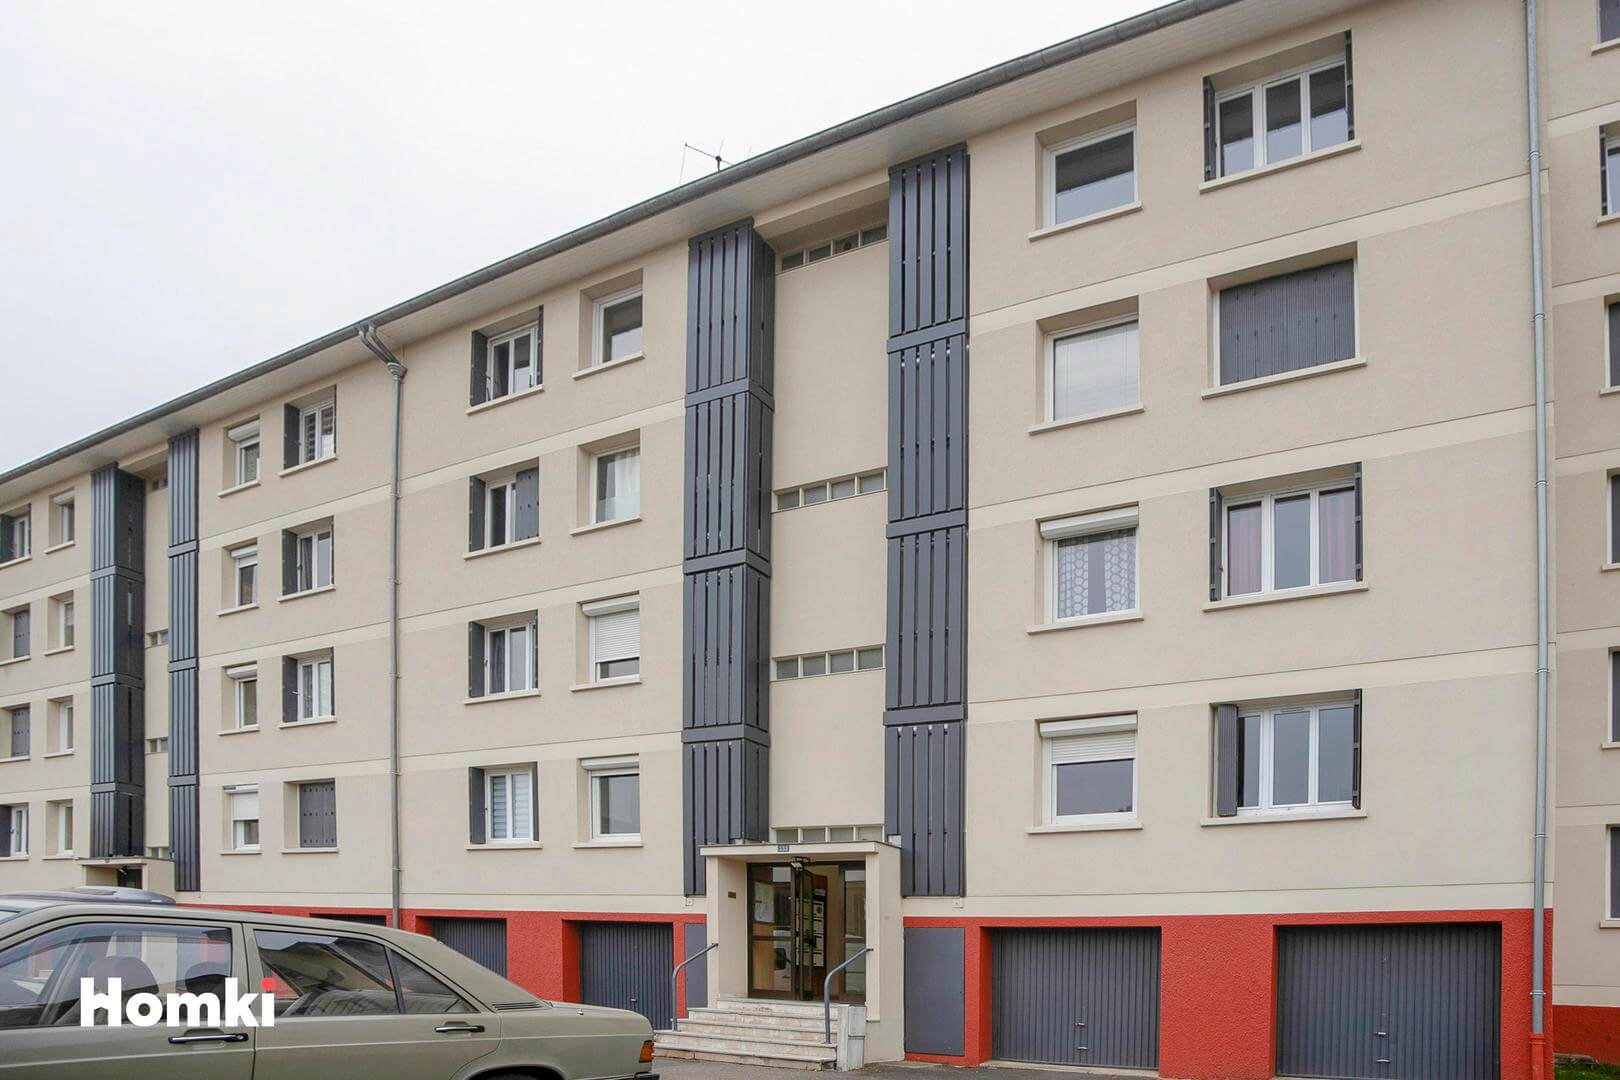 Homki - Vente Appartement  de 70.0 m² à Villefranche-sur-Saône 69400